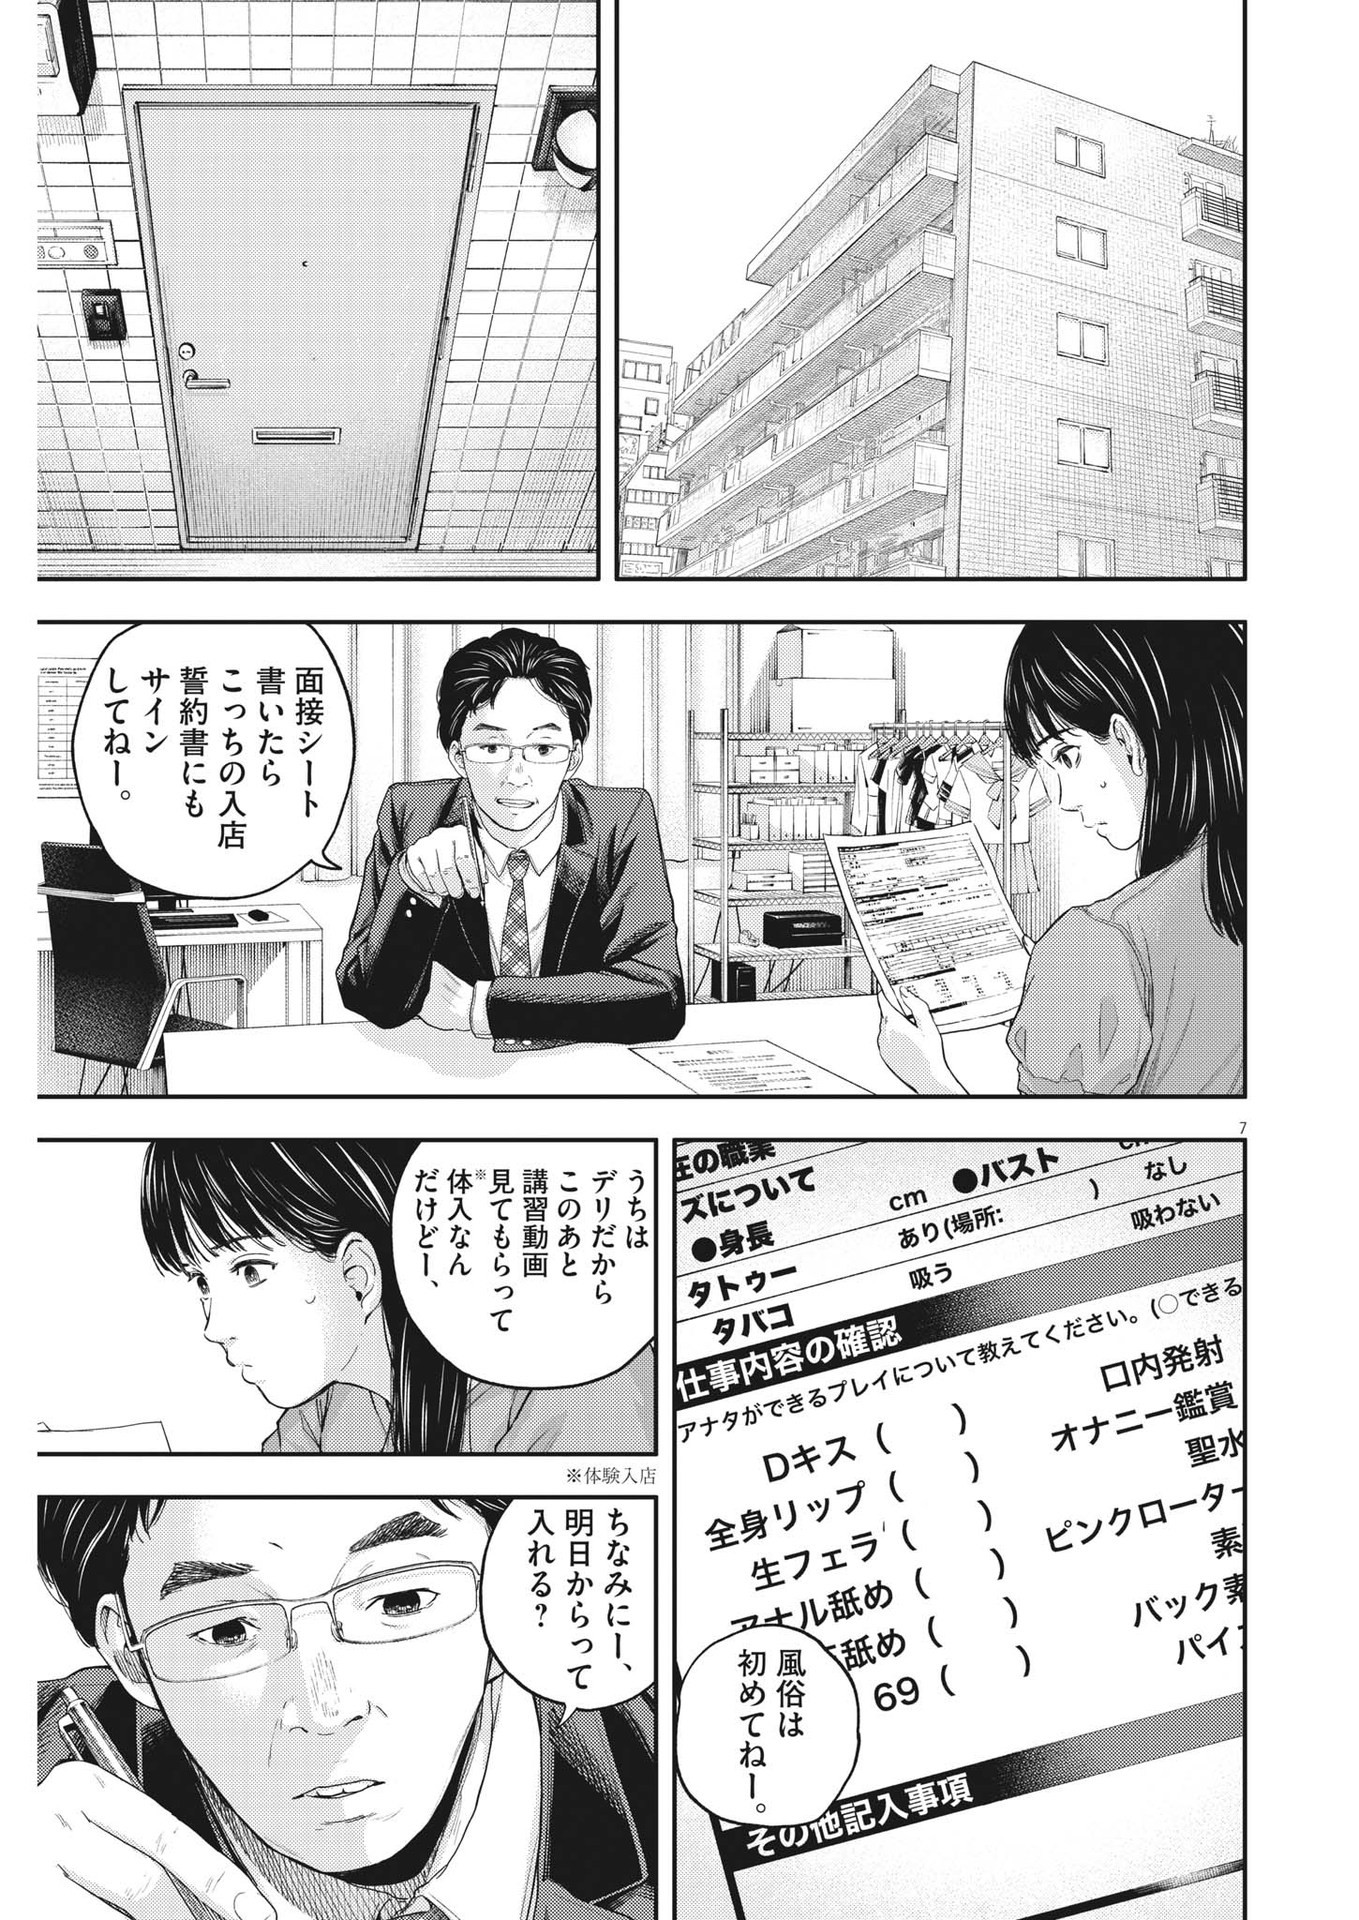 Yumenashi-sensei no Shinroshidou - Chapter 14 - Page 7